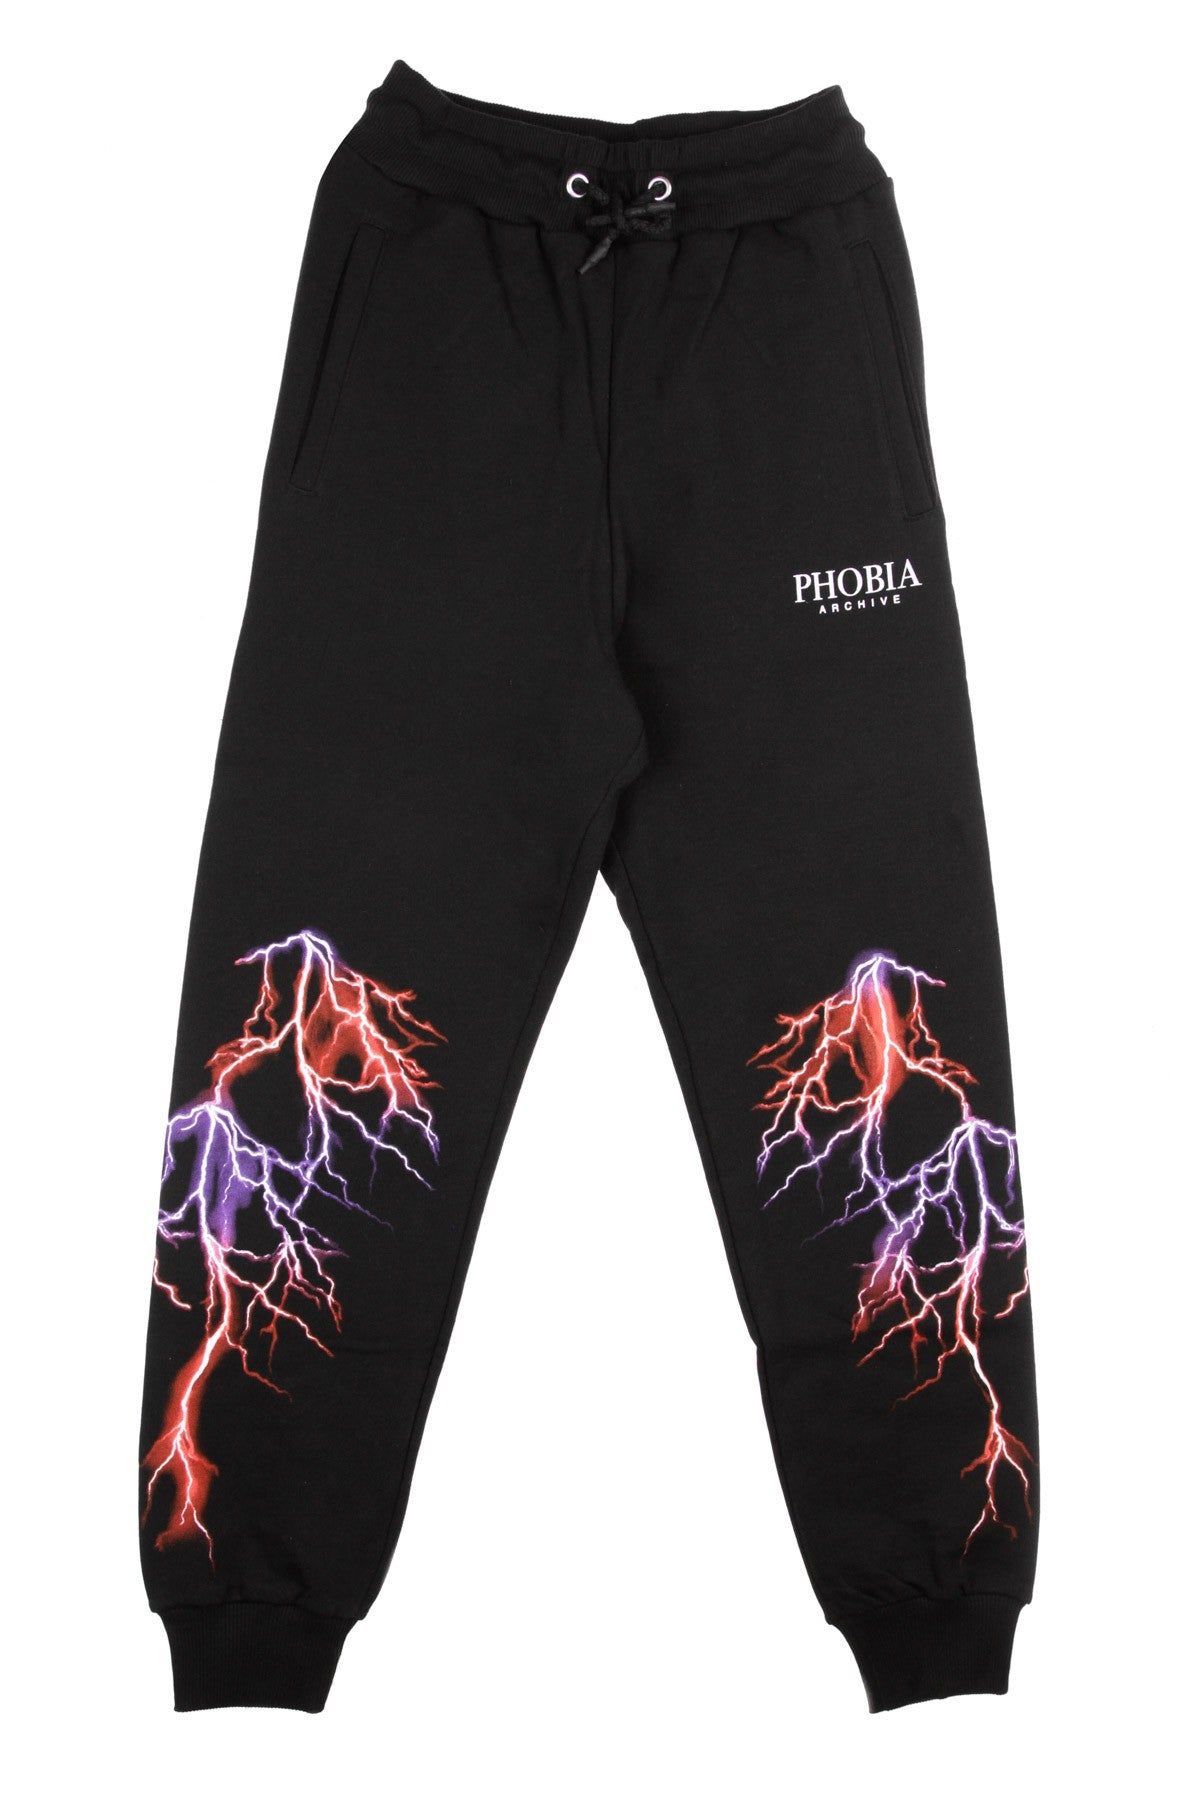 Phobia, Pantalone Tuta Leggero Uomo Violet Lightning Pants, Black/violet